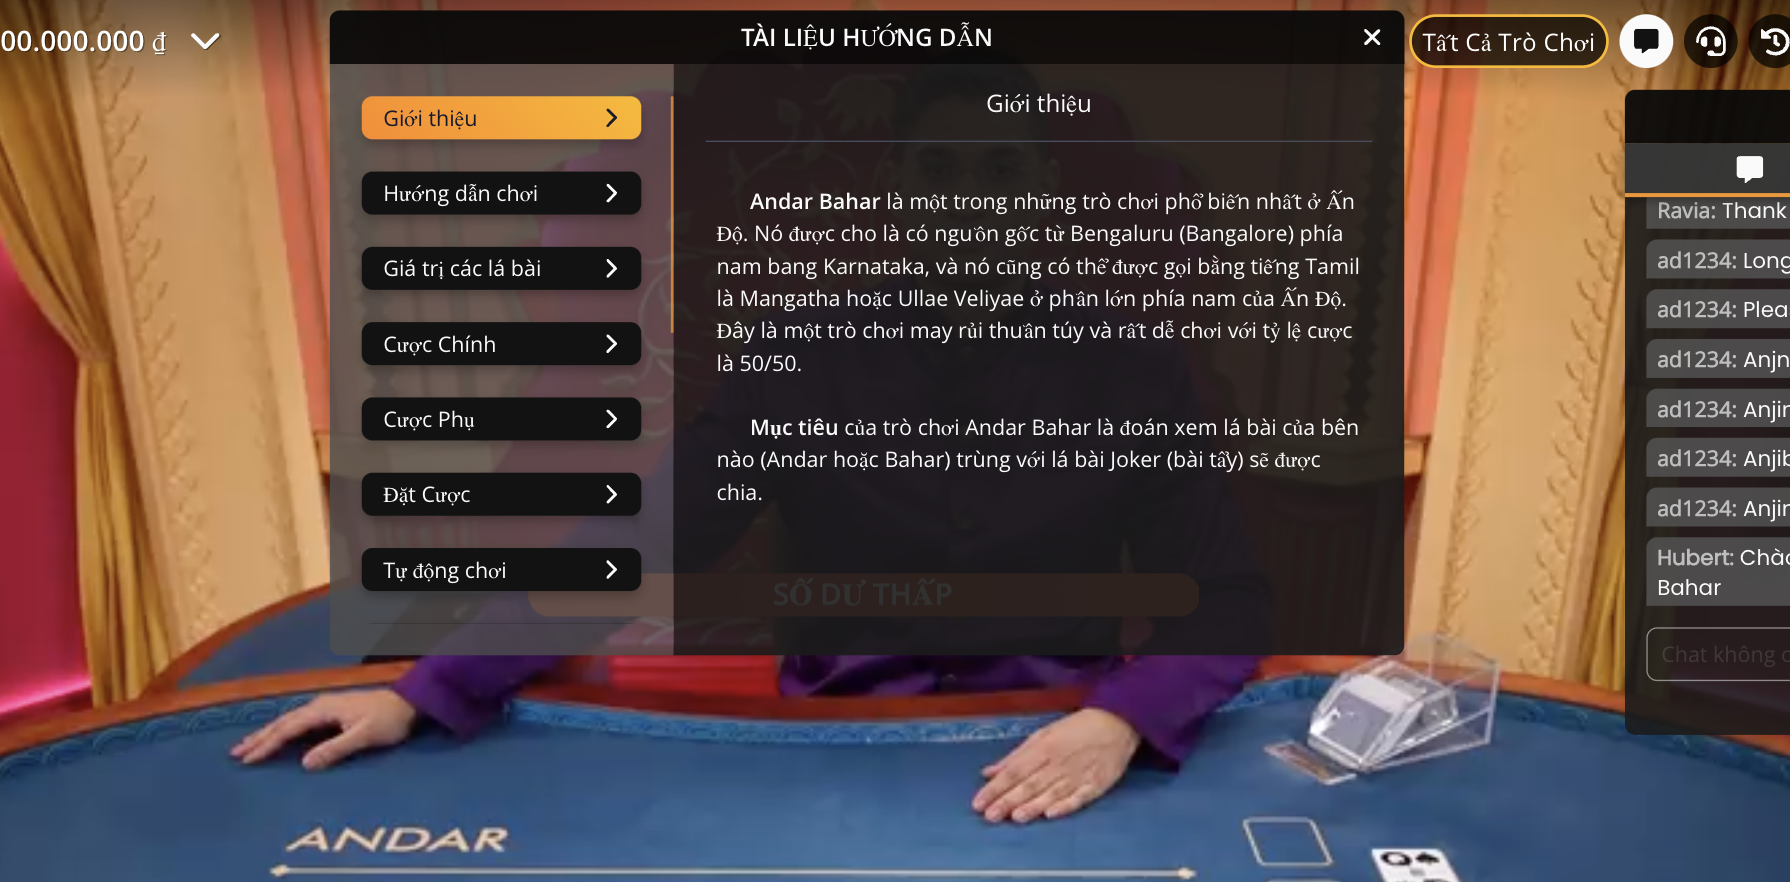 Trò chơi Andar Bahar ở UK88 VIP cũng có những yêu cầu về luật. 